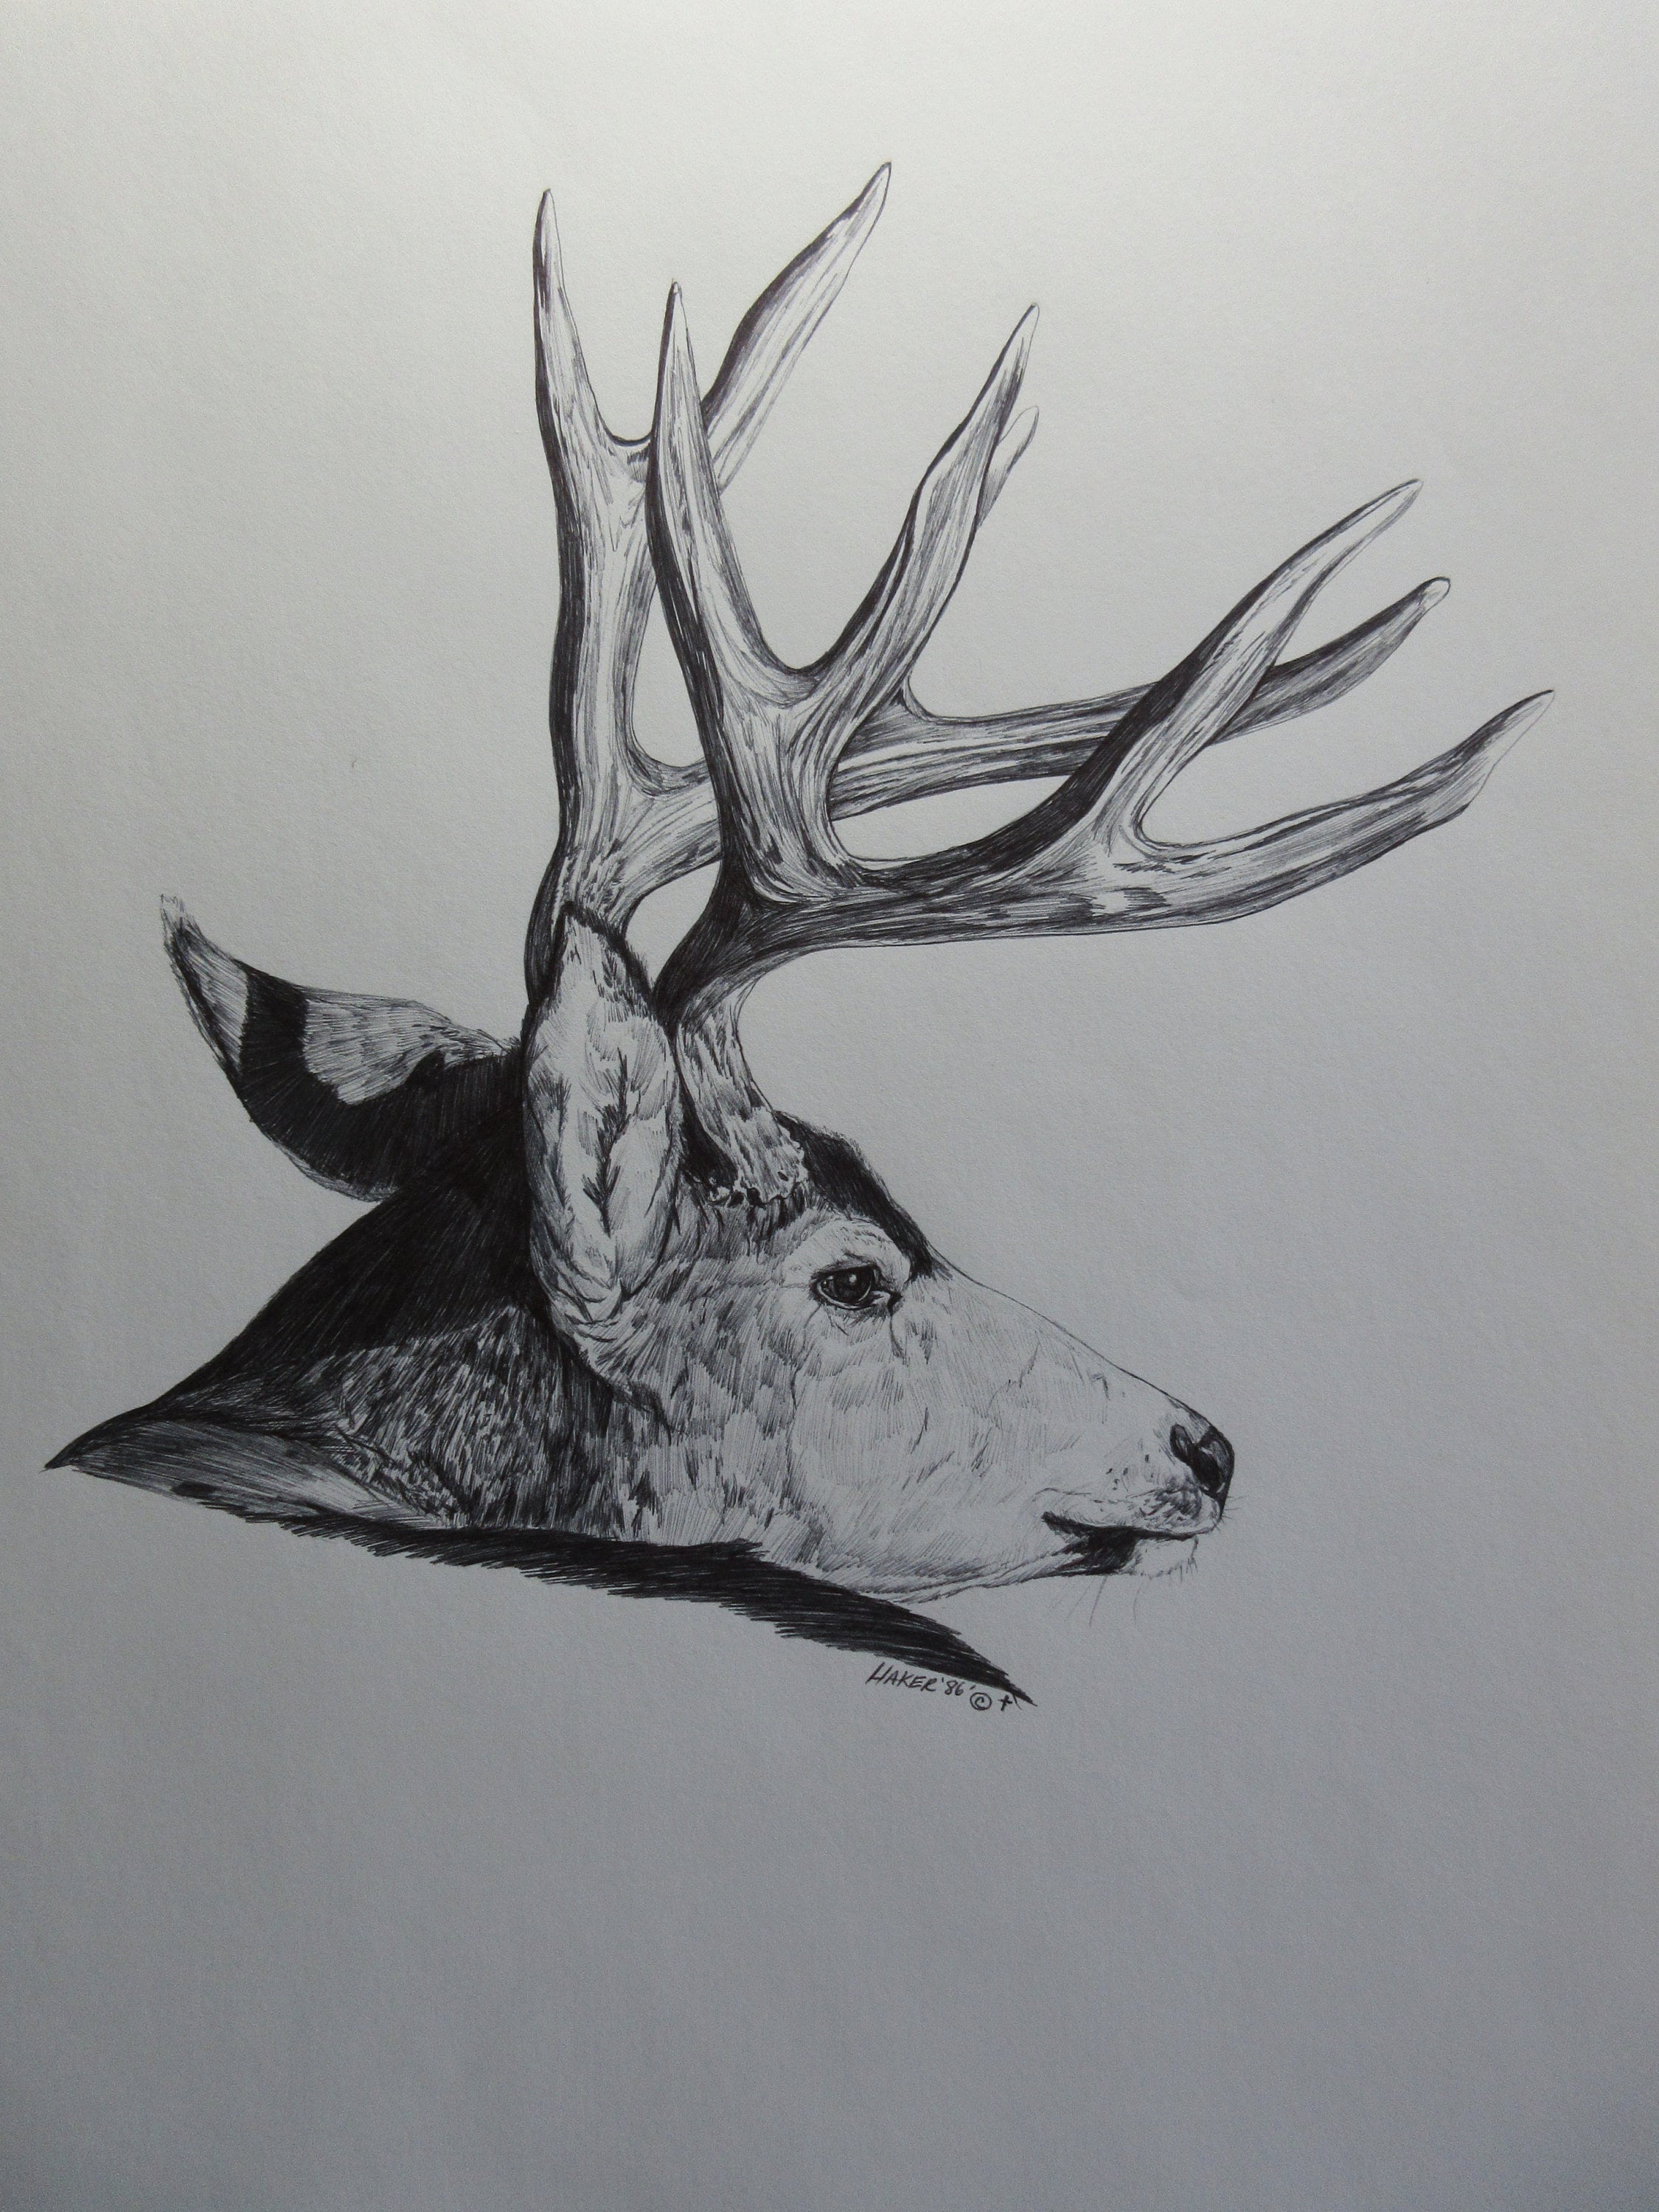 Sketchpage - Mule deer and whitetail antlers by BeckyKidus on